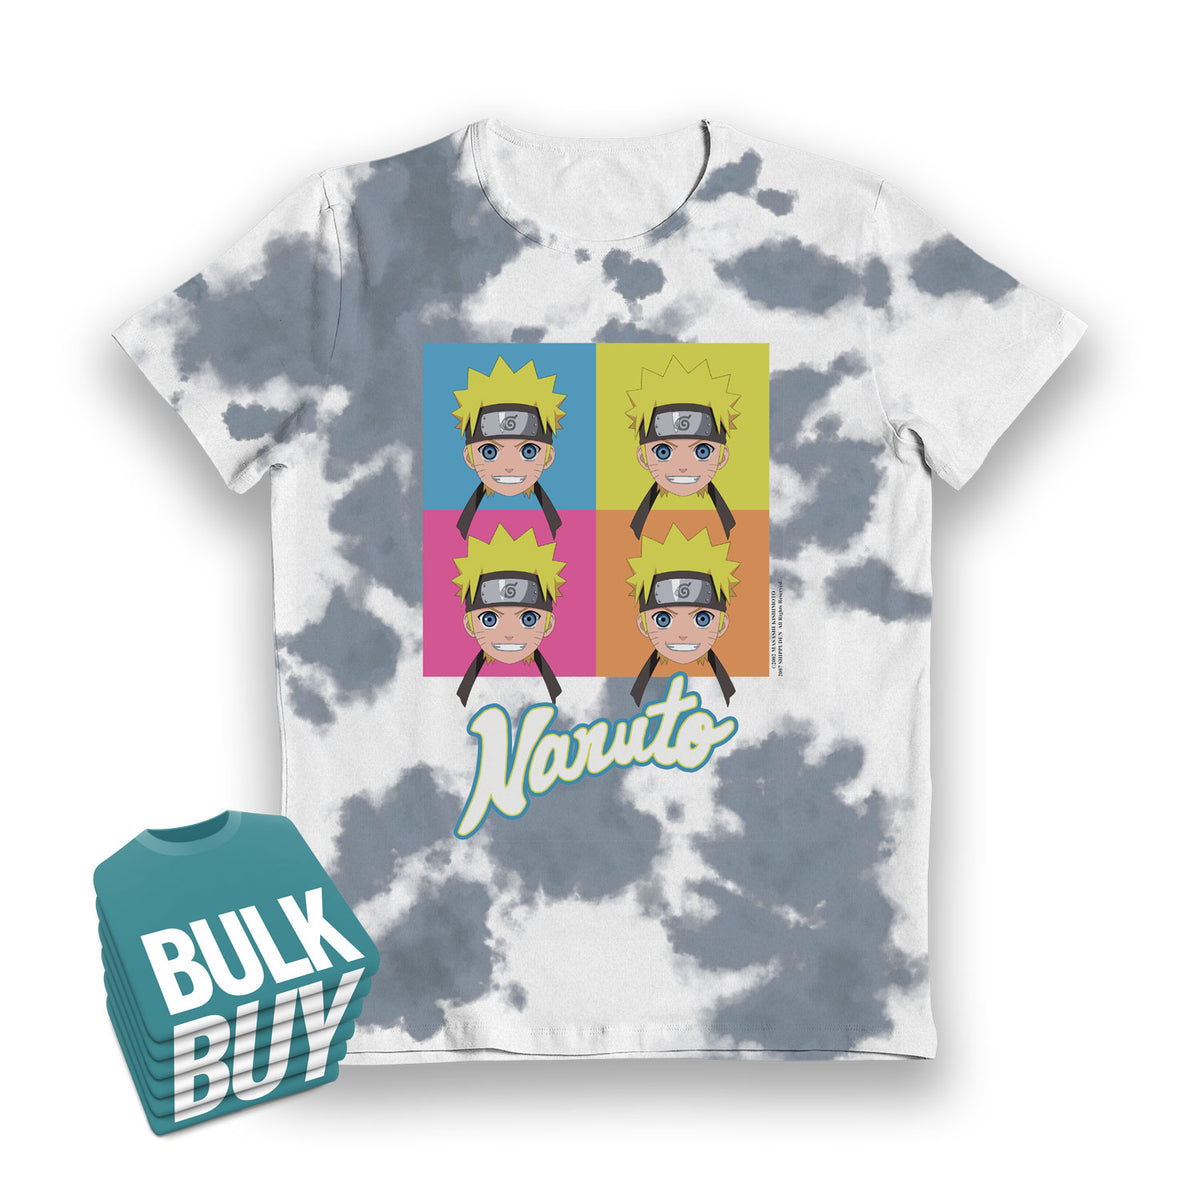 Naruto Faces Tie Dye Blue & White Kids T-Shirt - Bulk Buy